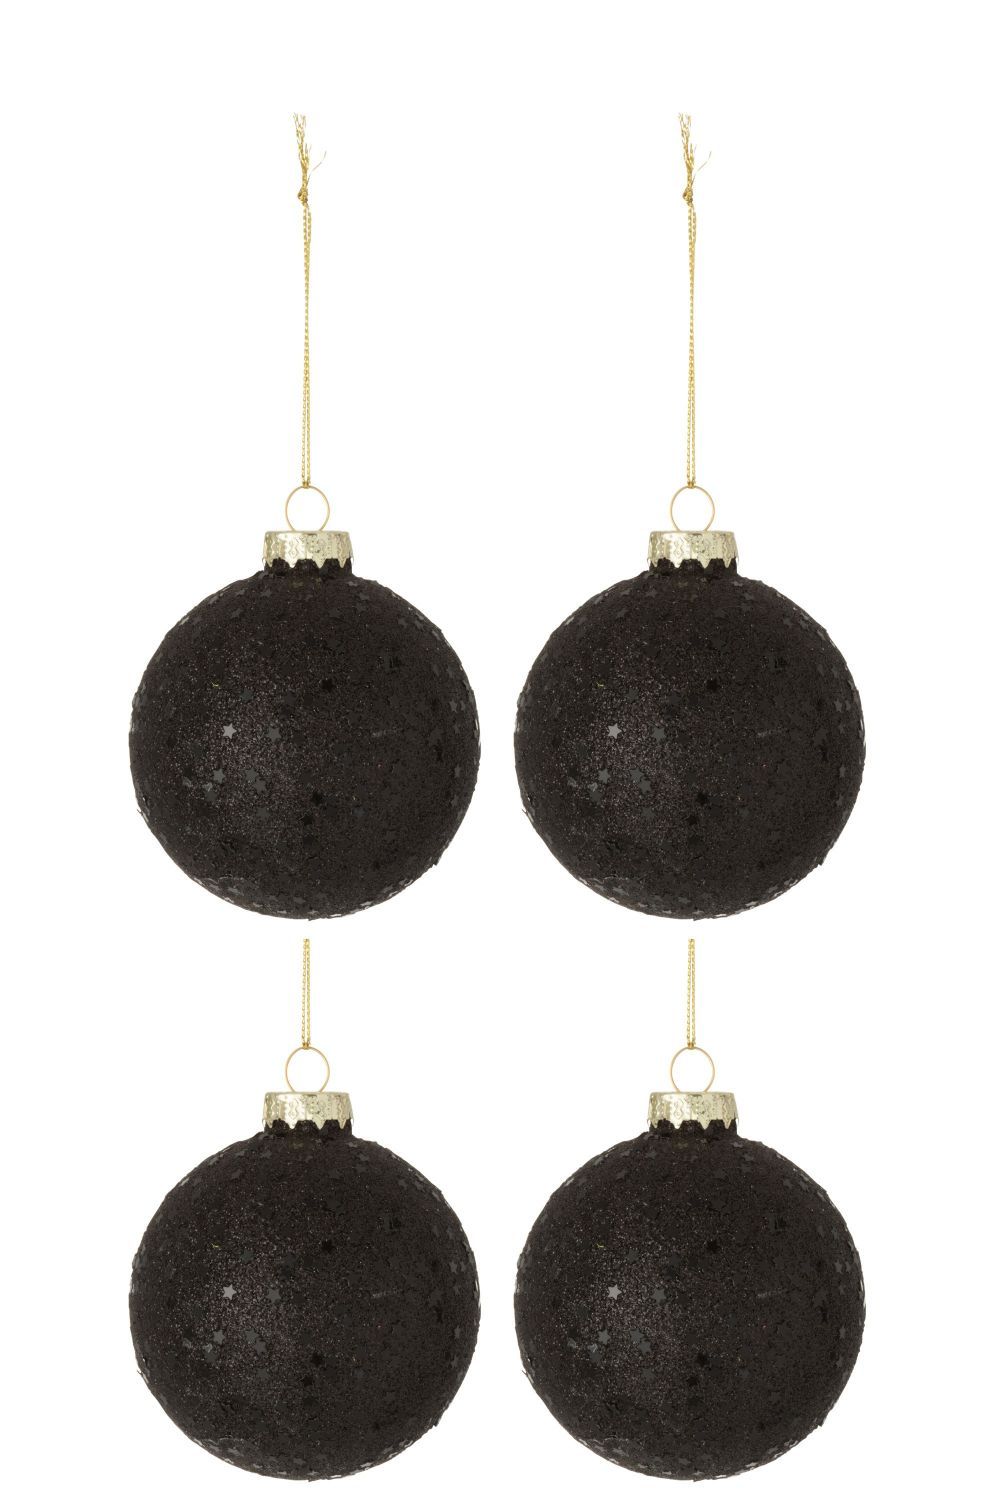 4ks černé vánoční koule  Baubles stars black  – Ø 10cm J-Line by Jolipa - LaHome - vintage dekorace